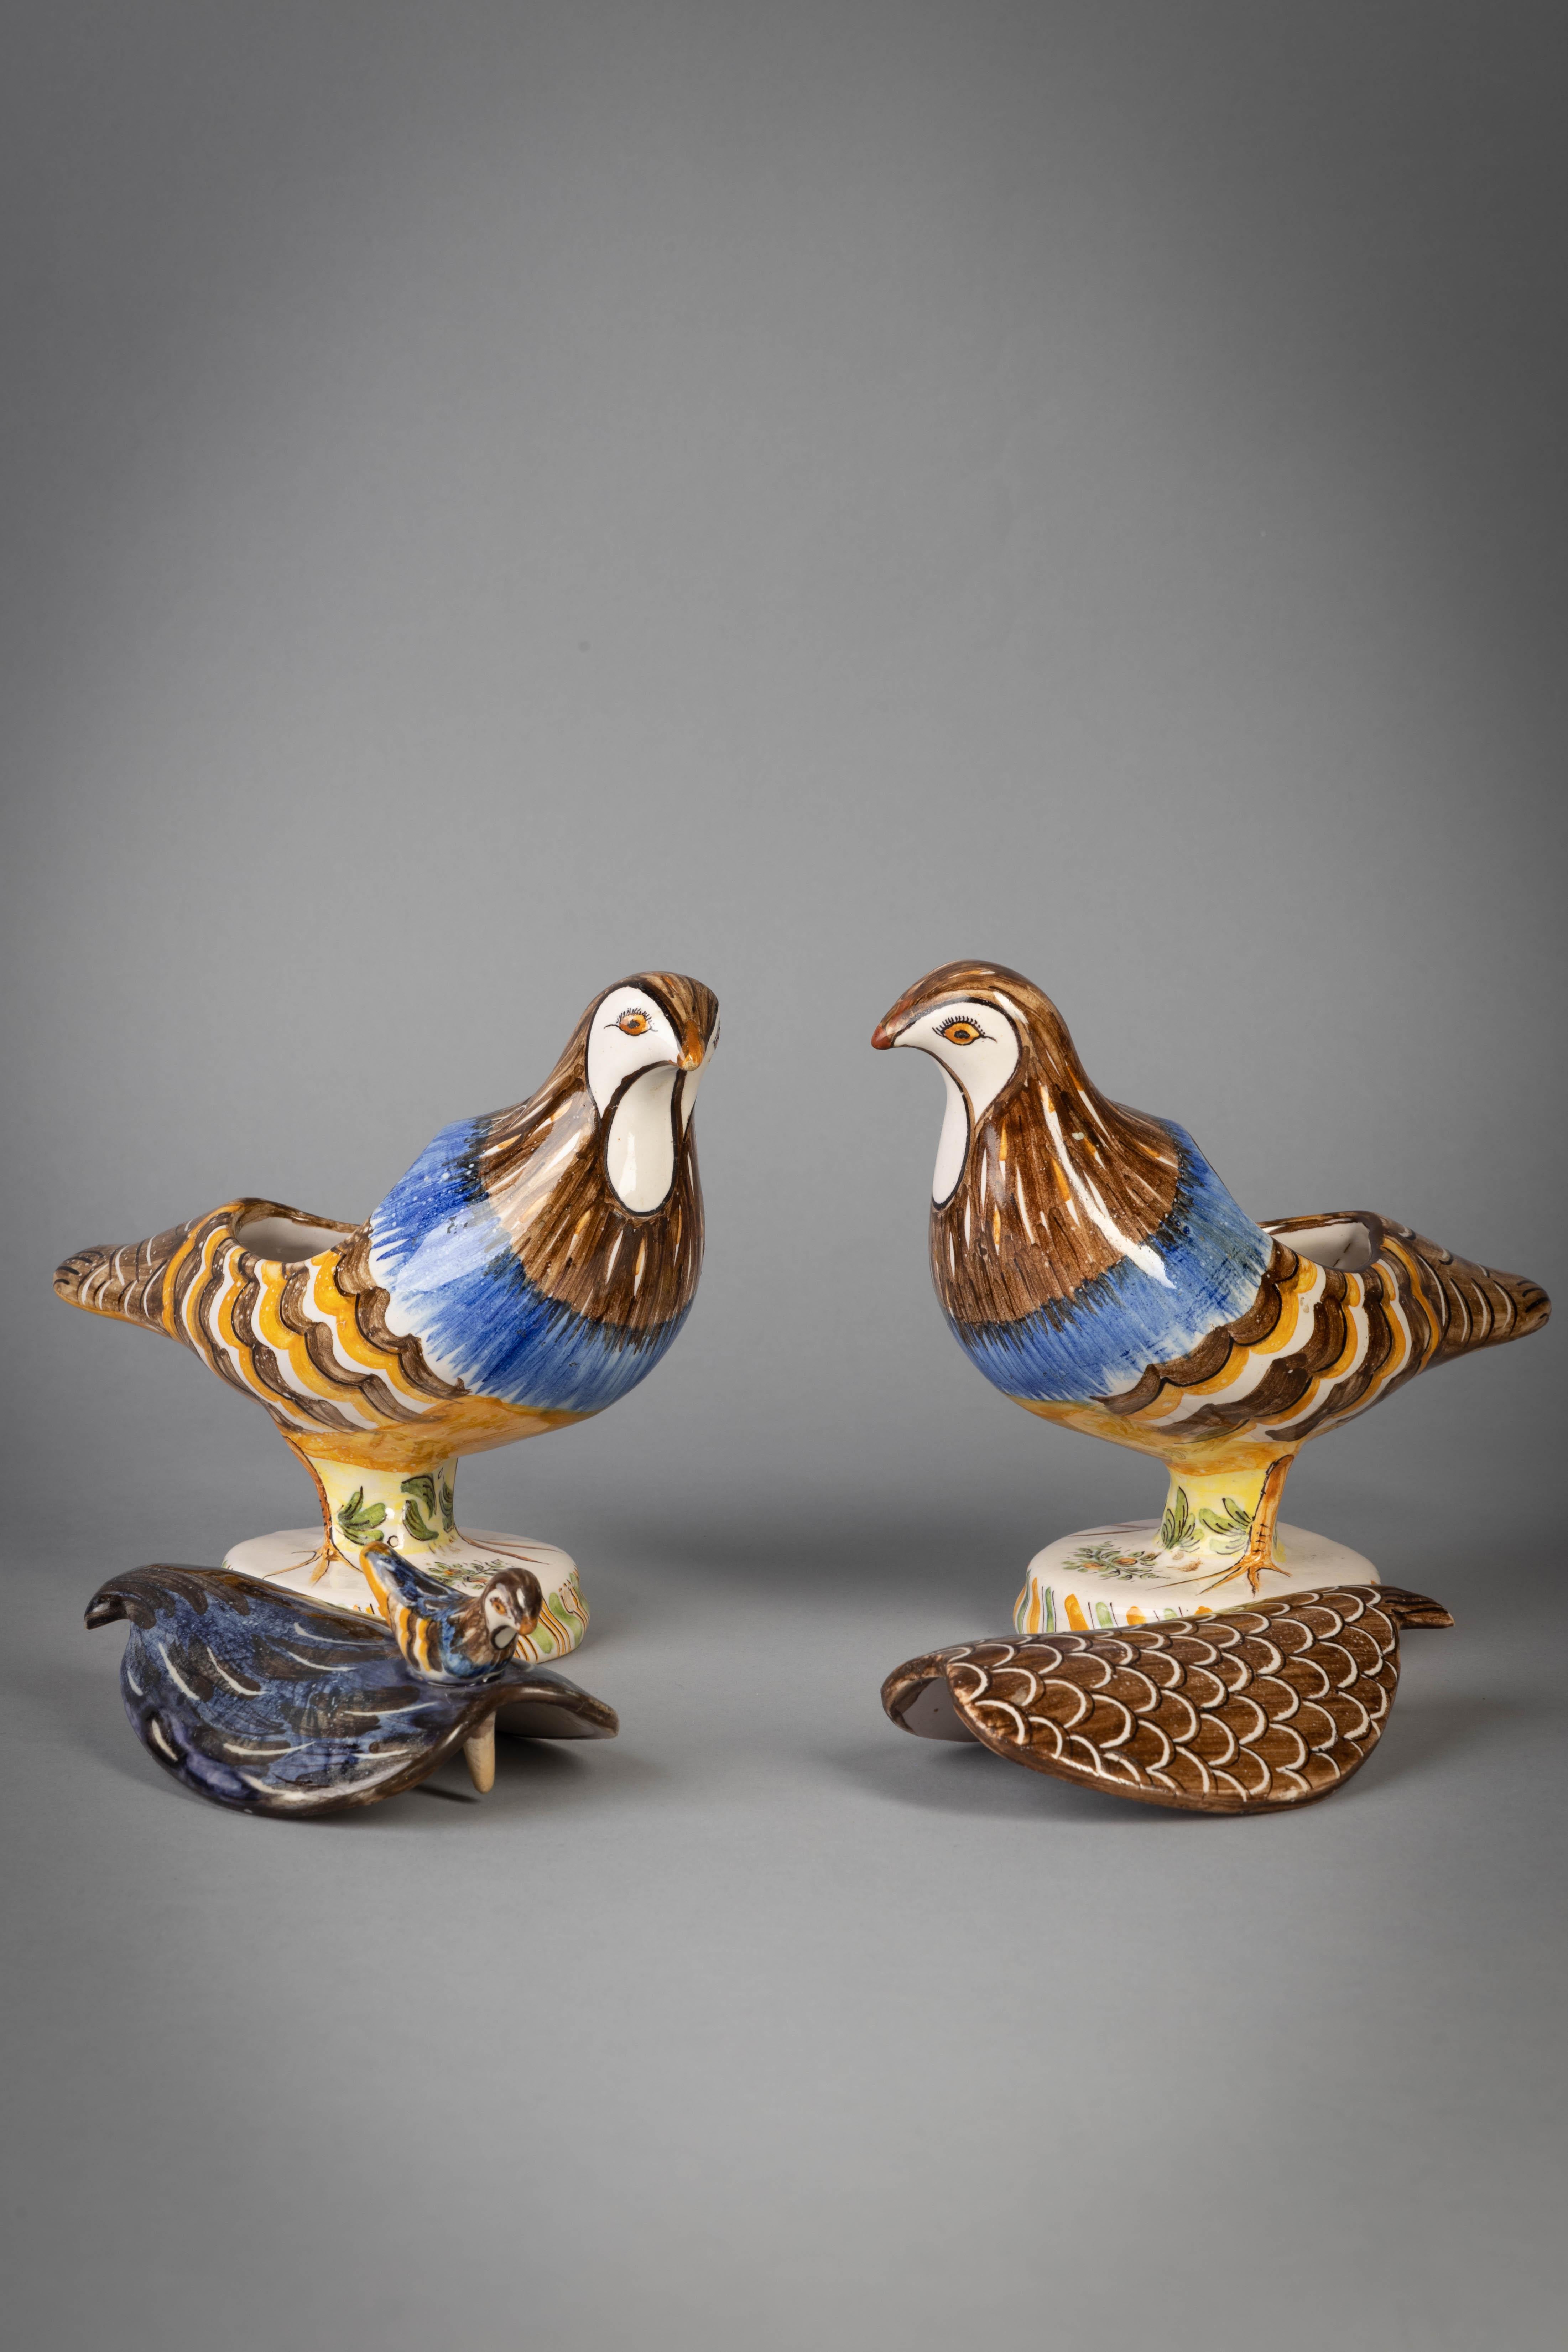 Pair of delft bird boxes, circa 1860.